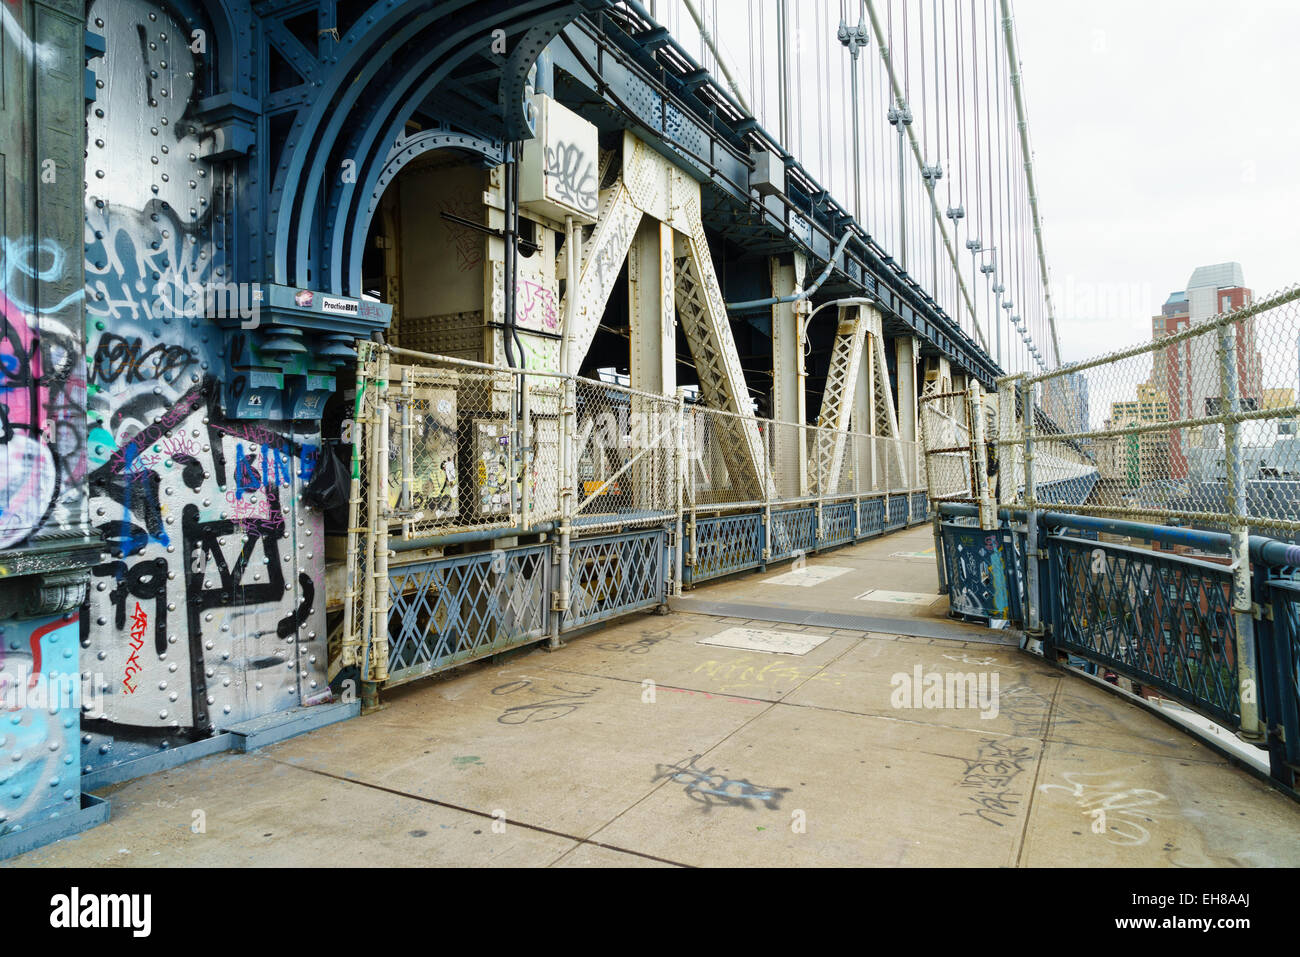 Pedestrian walkway and graffiti, Manhattan Bridge, New York City, New York, United States of America, North America Stock Photo